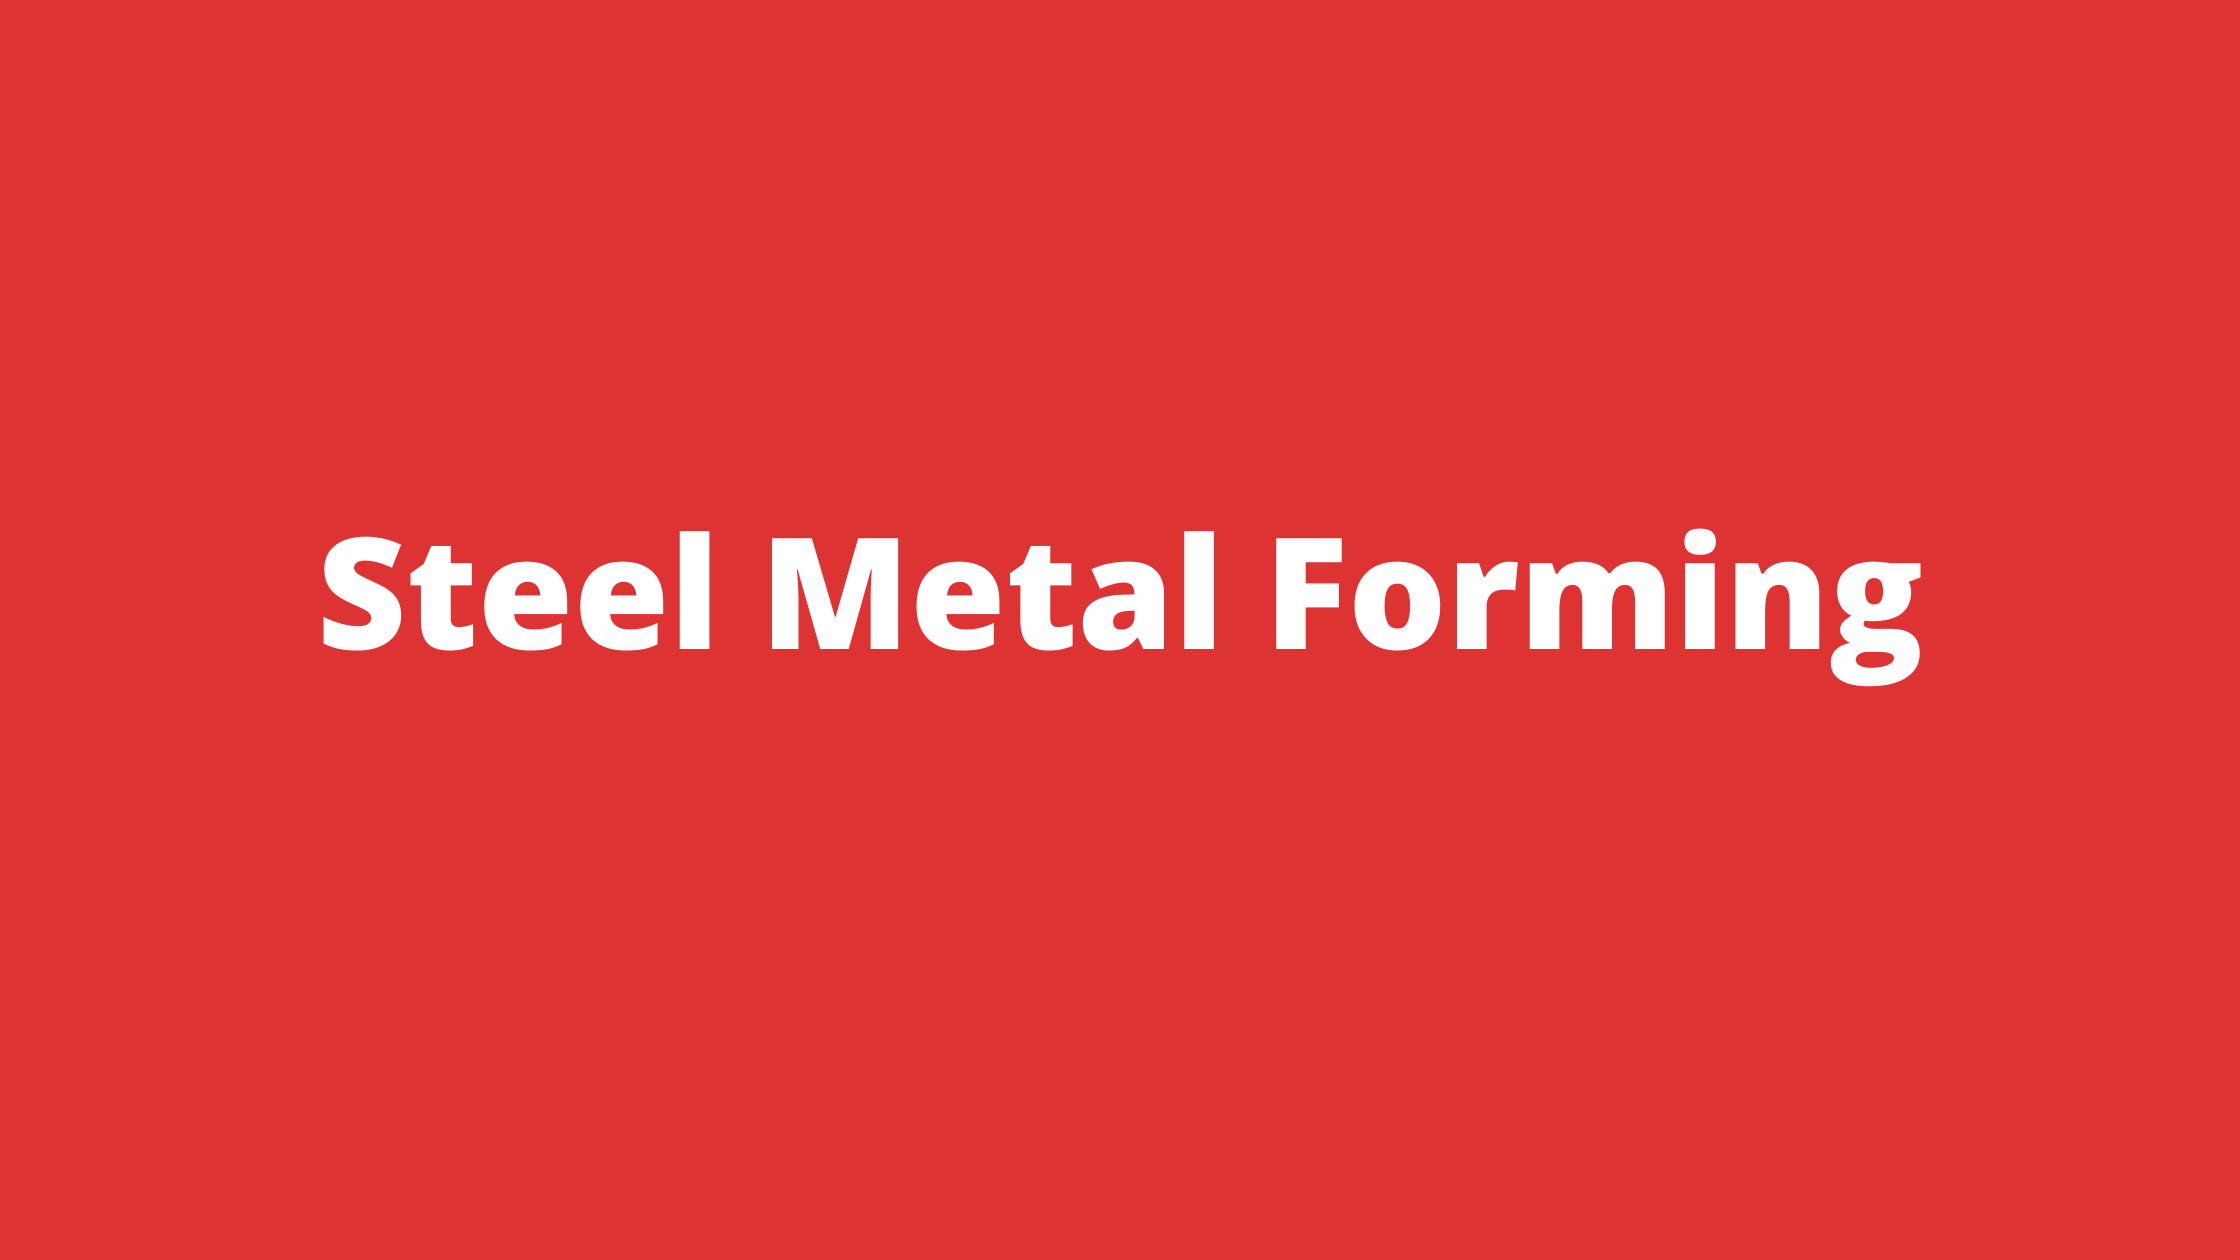 Steel Metal Forming